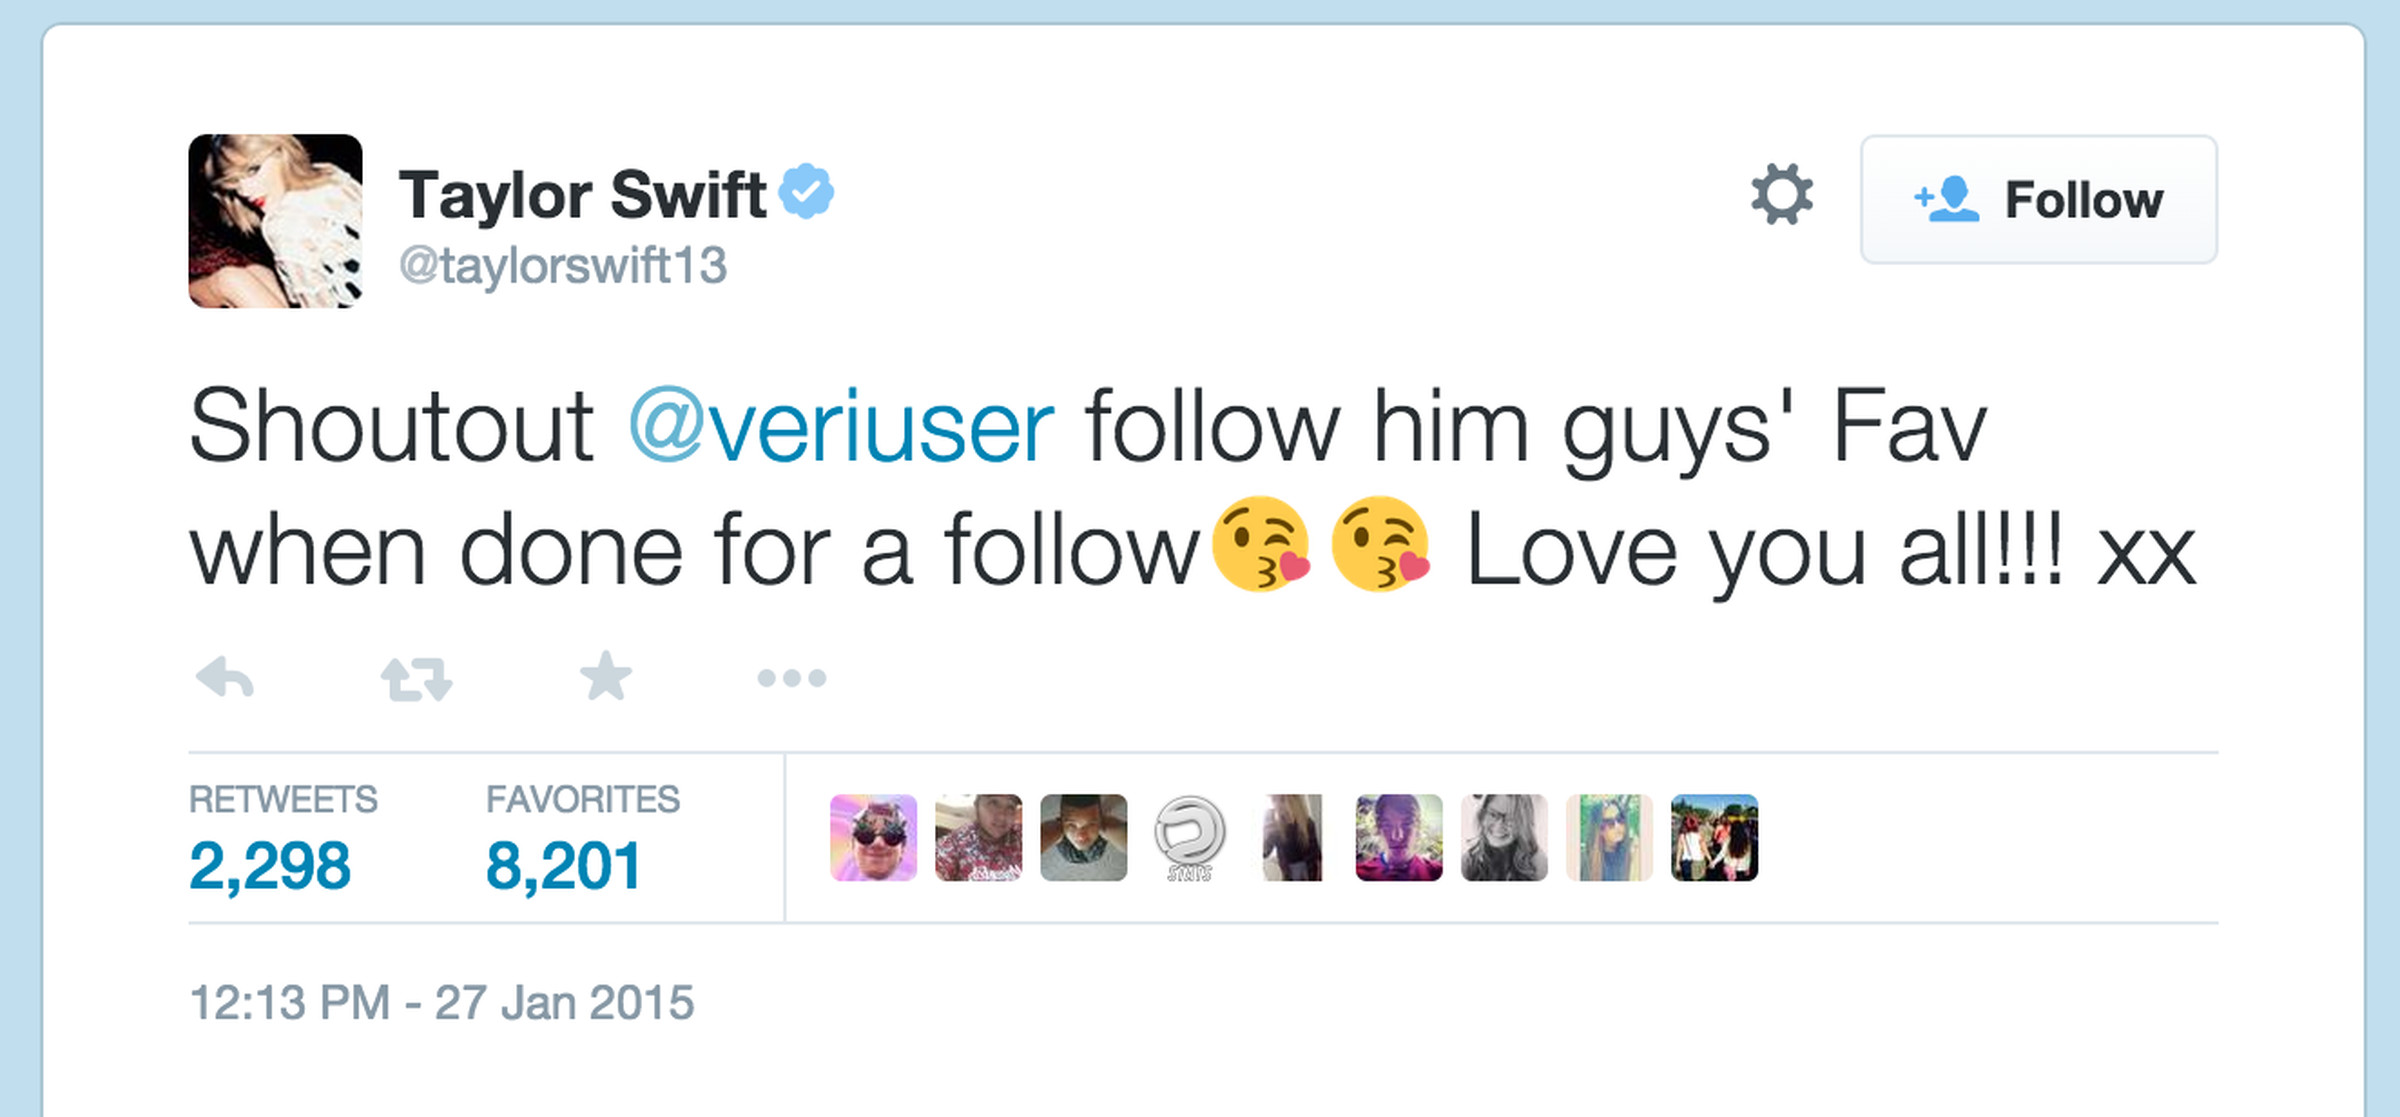 Taylor Swift Twitter hacked